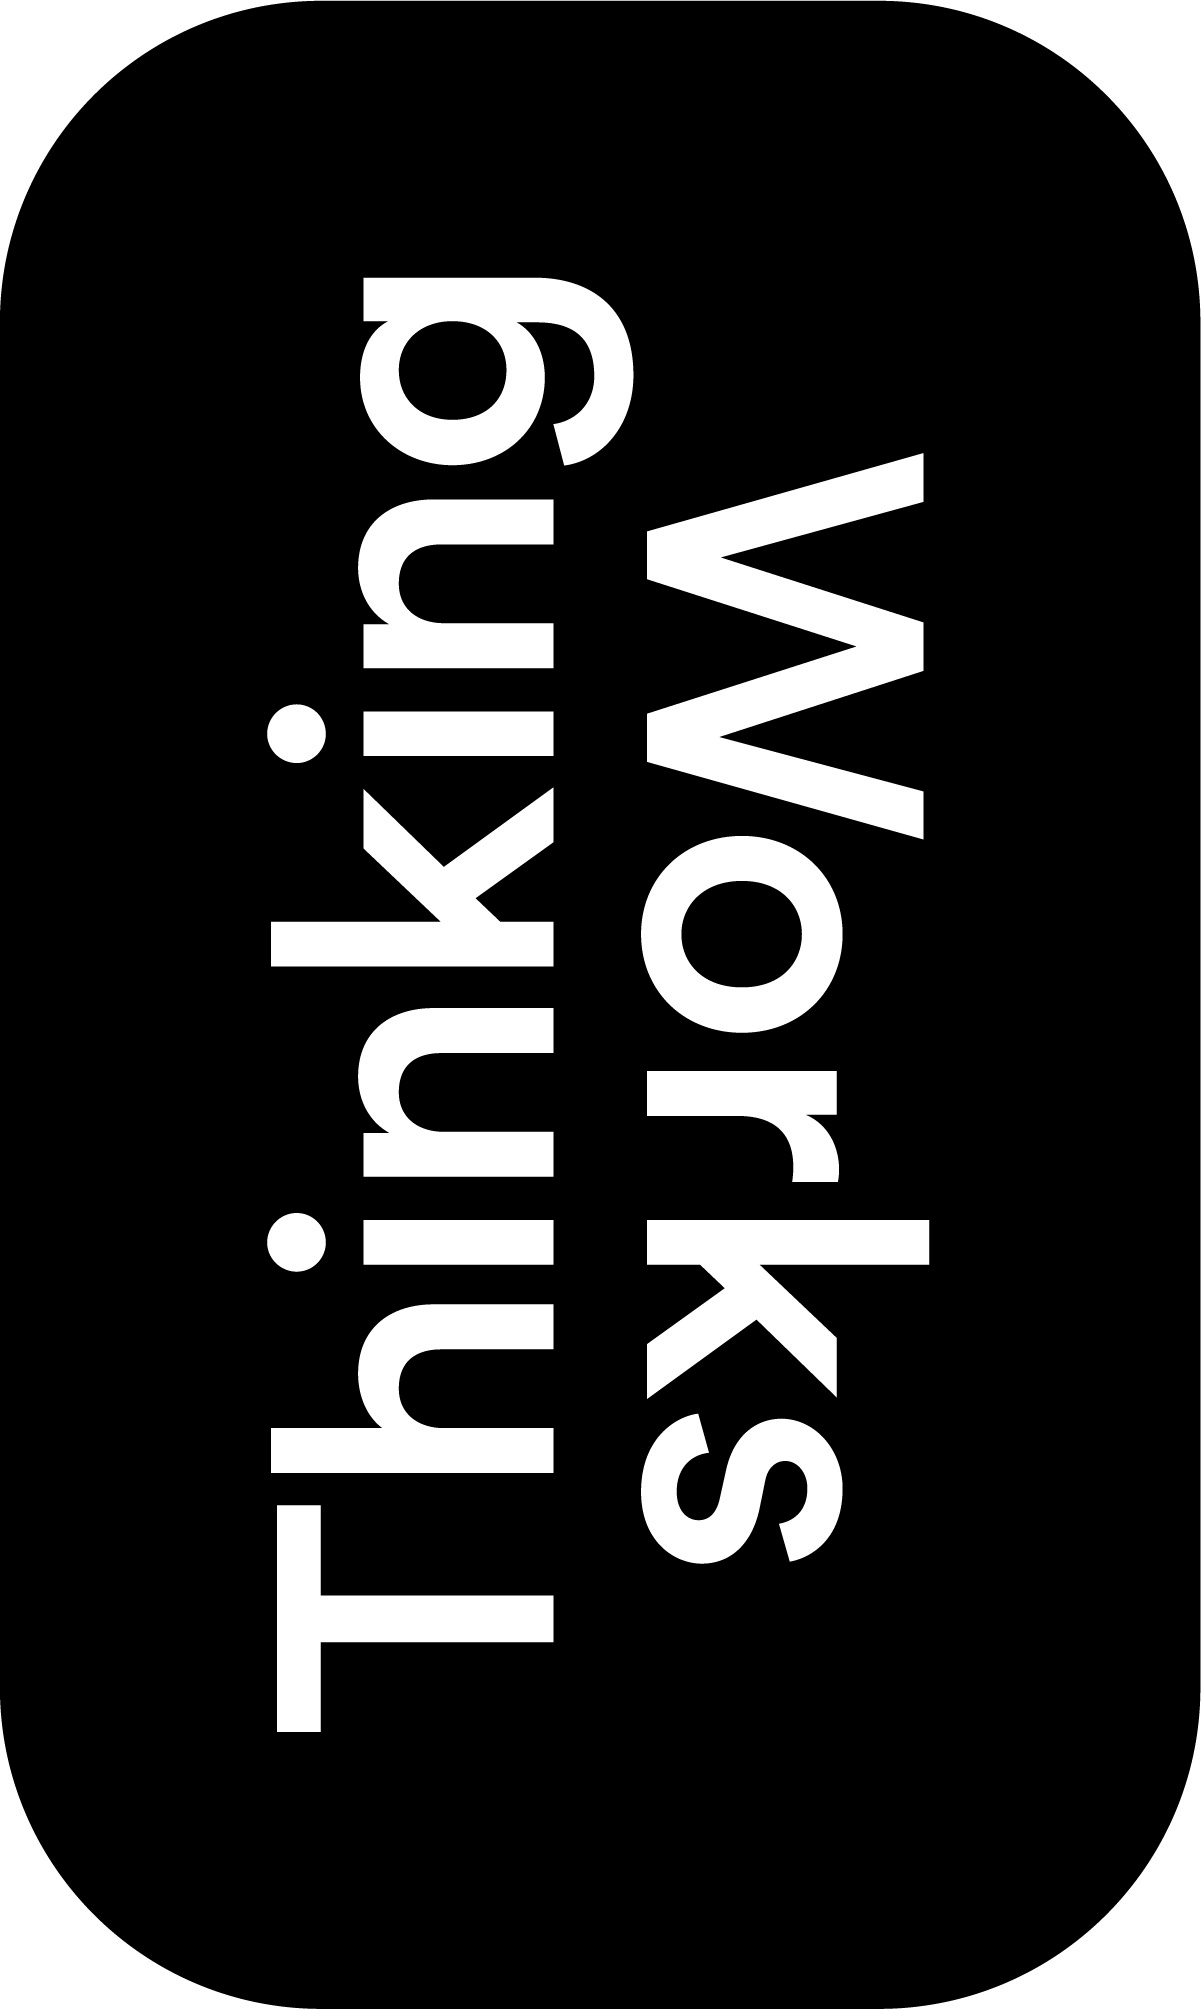 Thinking Works logo